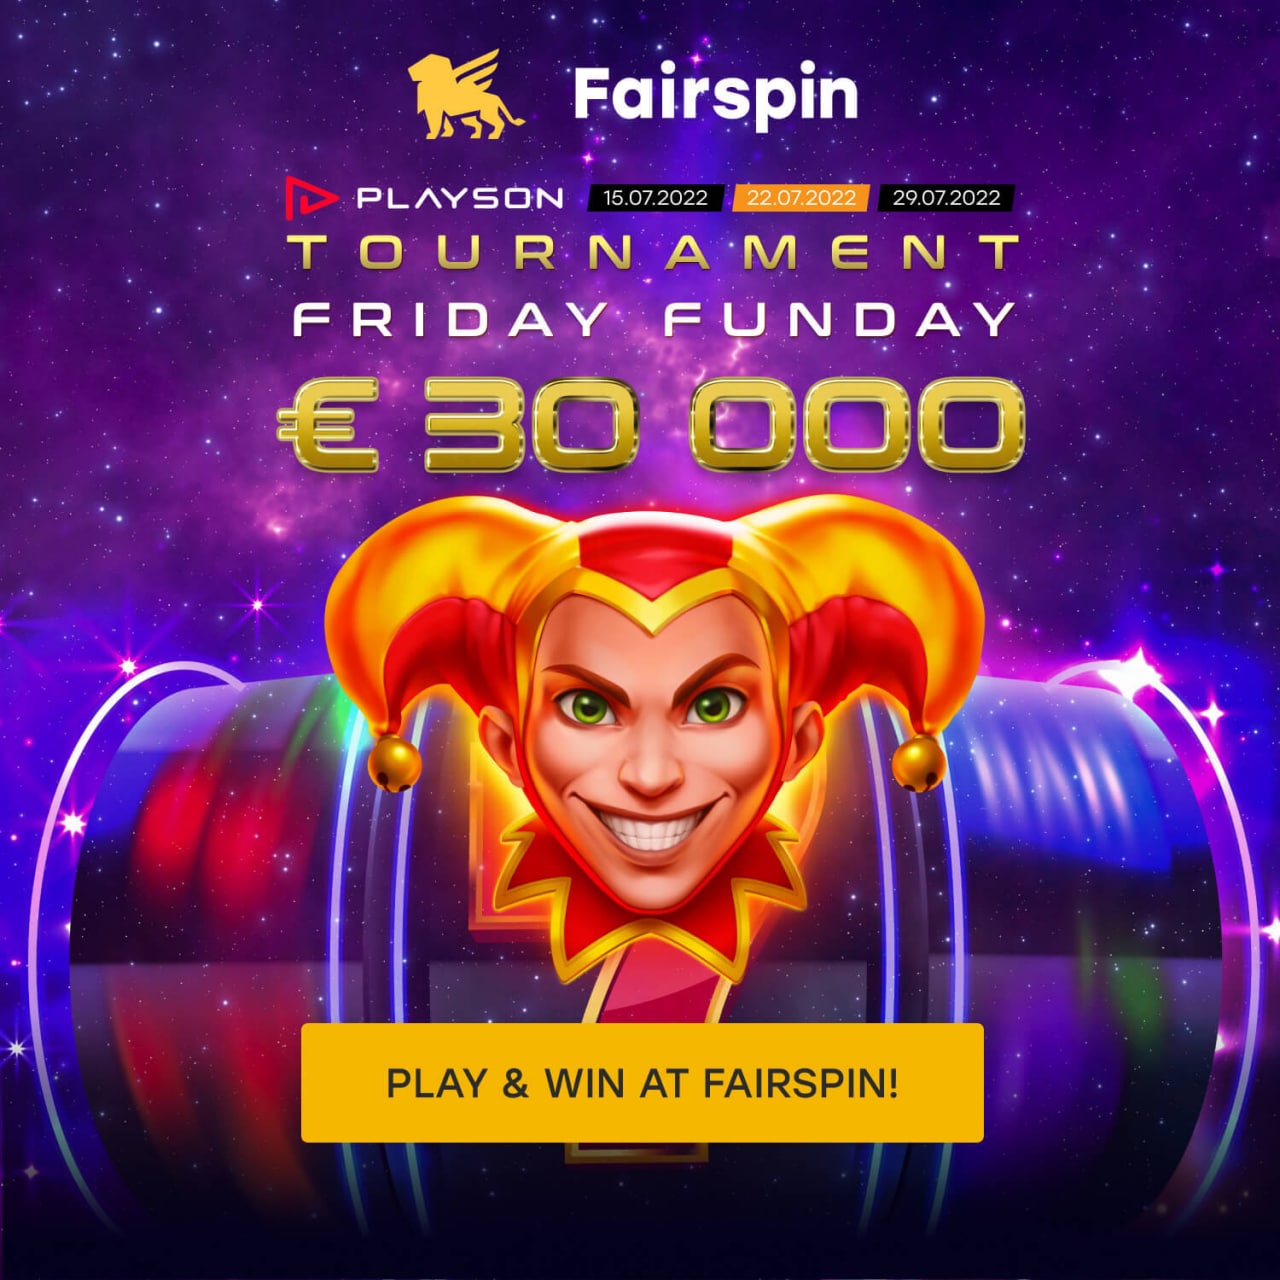 Fairspin фриспины fairspin plp fun. Playson Tournament.